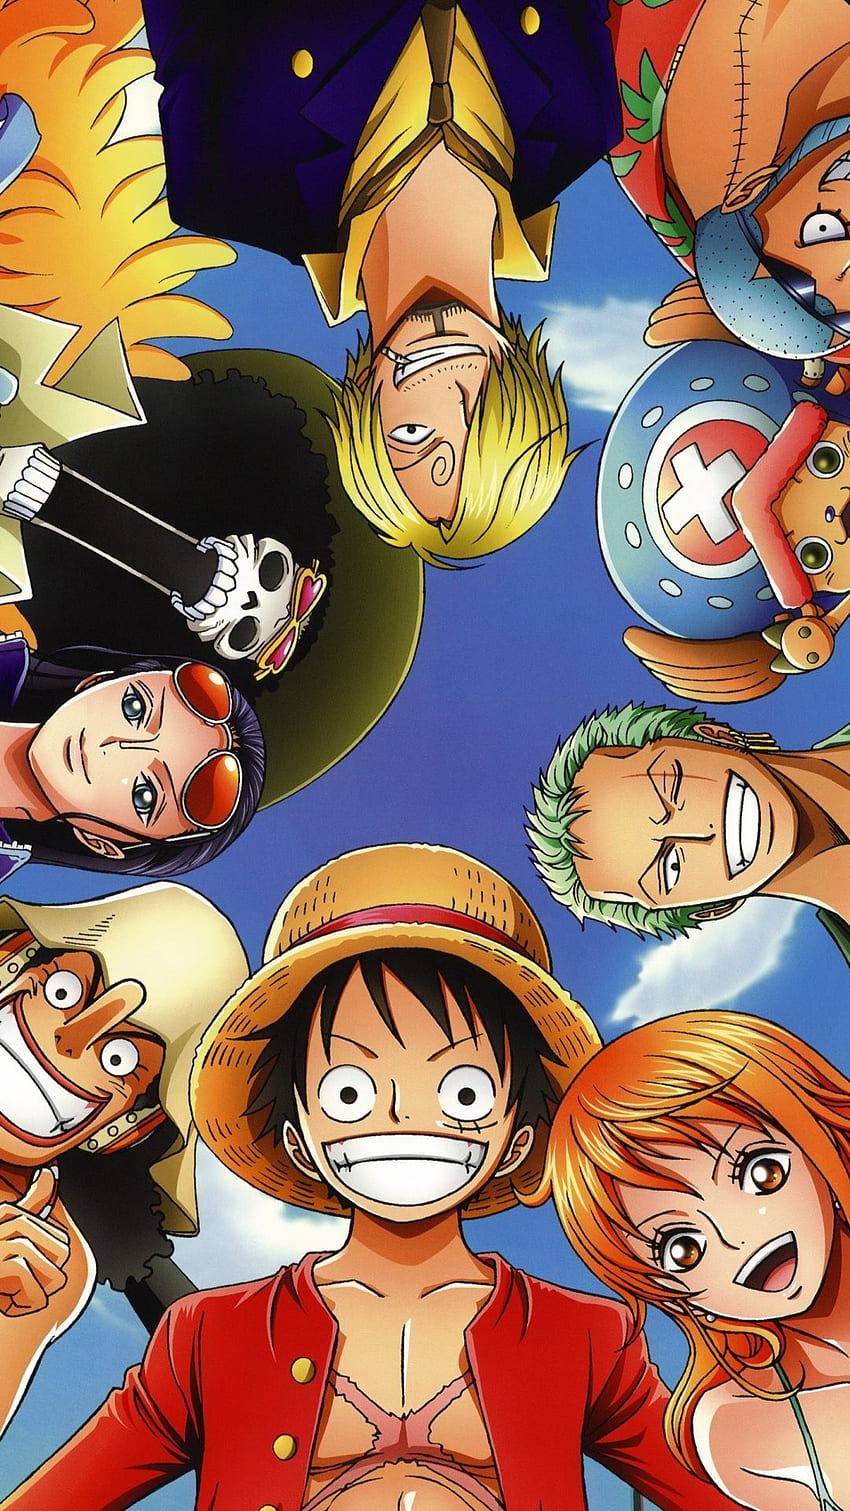 Anime One Piece là một bộ anime rất đáng để xem. Bạn sẽ được trải nghiệm cuộc phiêu lưu đầy thú vị của băng hải tặc Mugiwara trên đại dương rộng lớn. Cảm giác hồi hộp, hài hước, và cả những giây phút cảm động sẽ khiến bạn không thể rời mắt khỏi màn hình. Hãy xem anime One Piece ngay để khám phá thế giới đích thực của băng hải tặc Mugiwara.